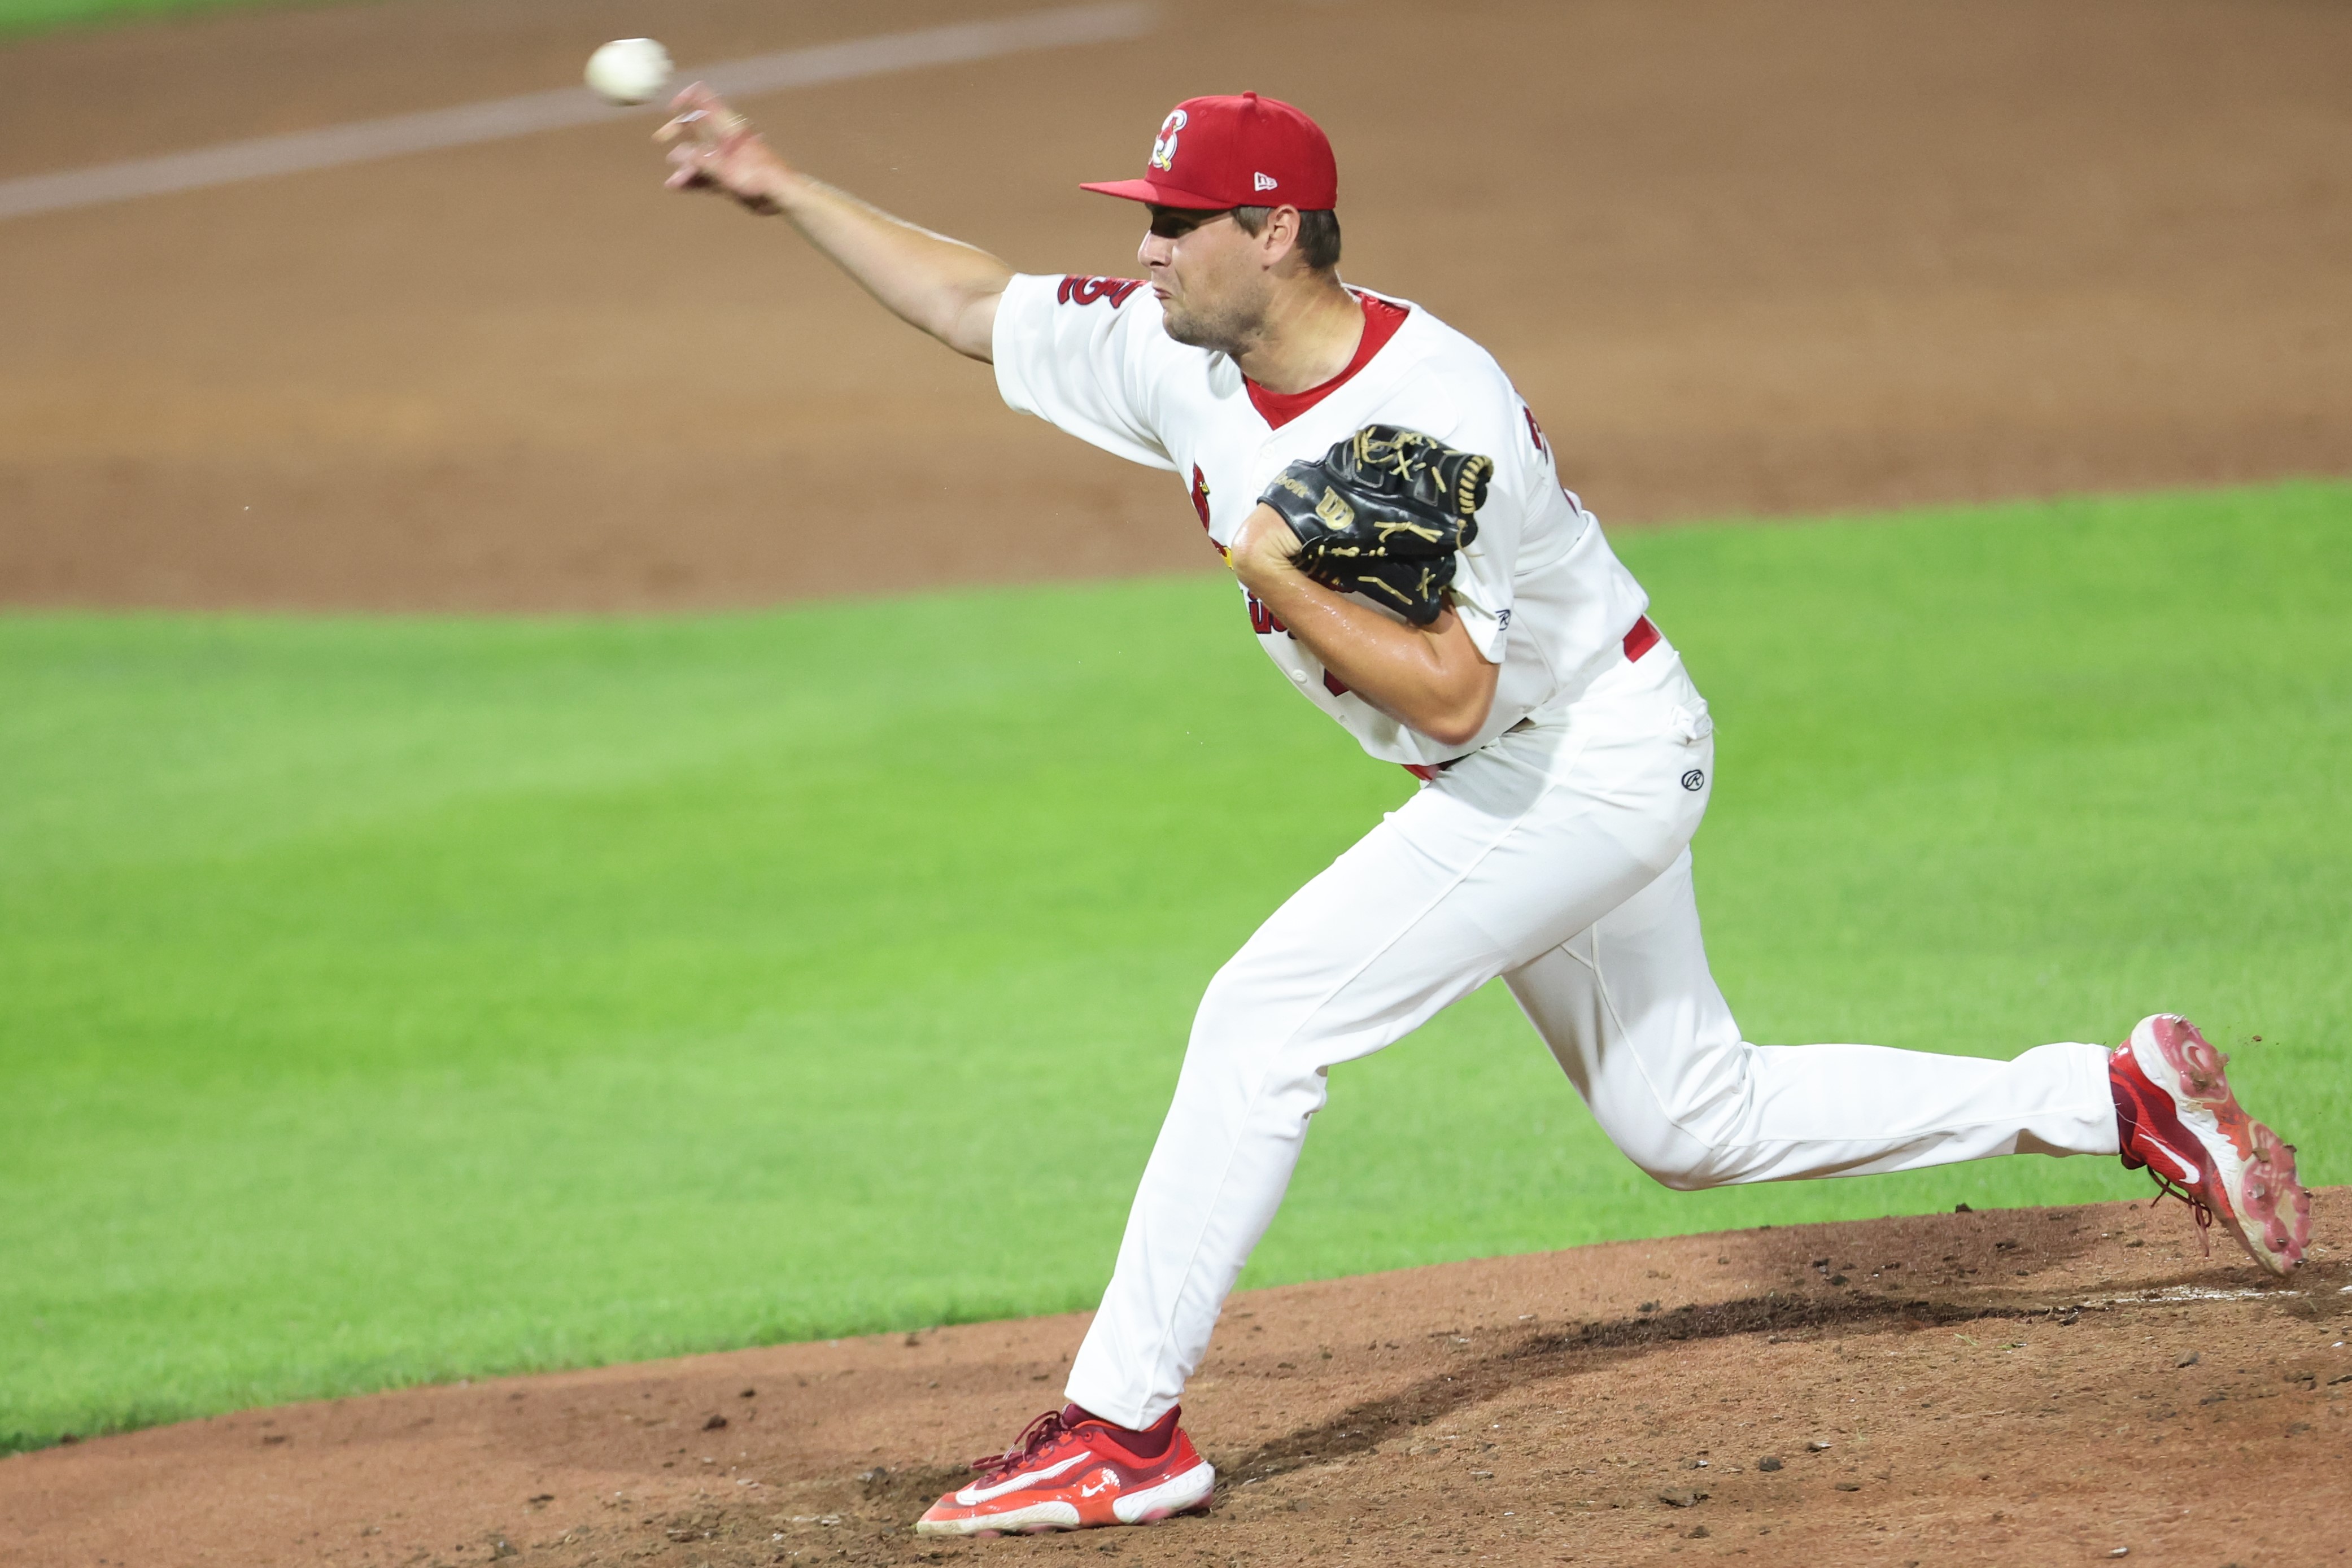 Matt Svanson, wearing a Springfield Cardinals uniform, pitches the baseball during a game